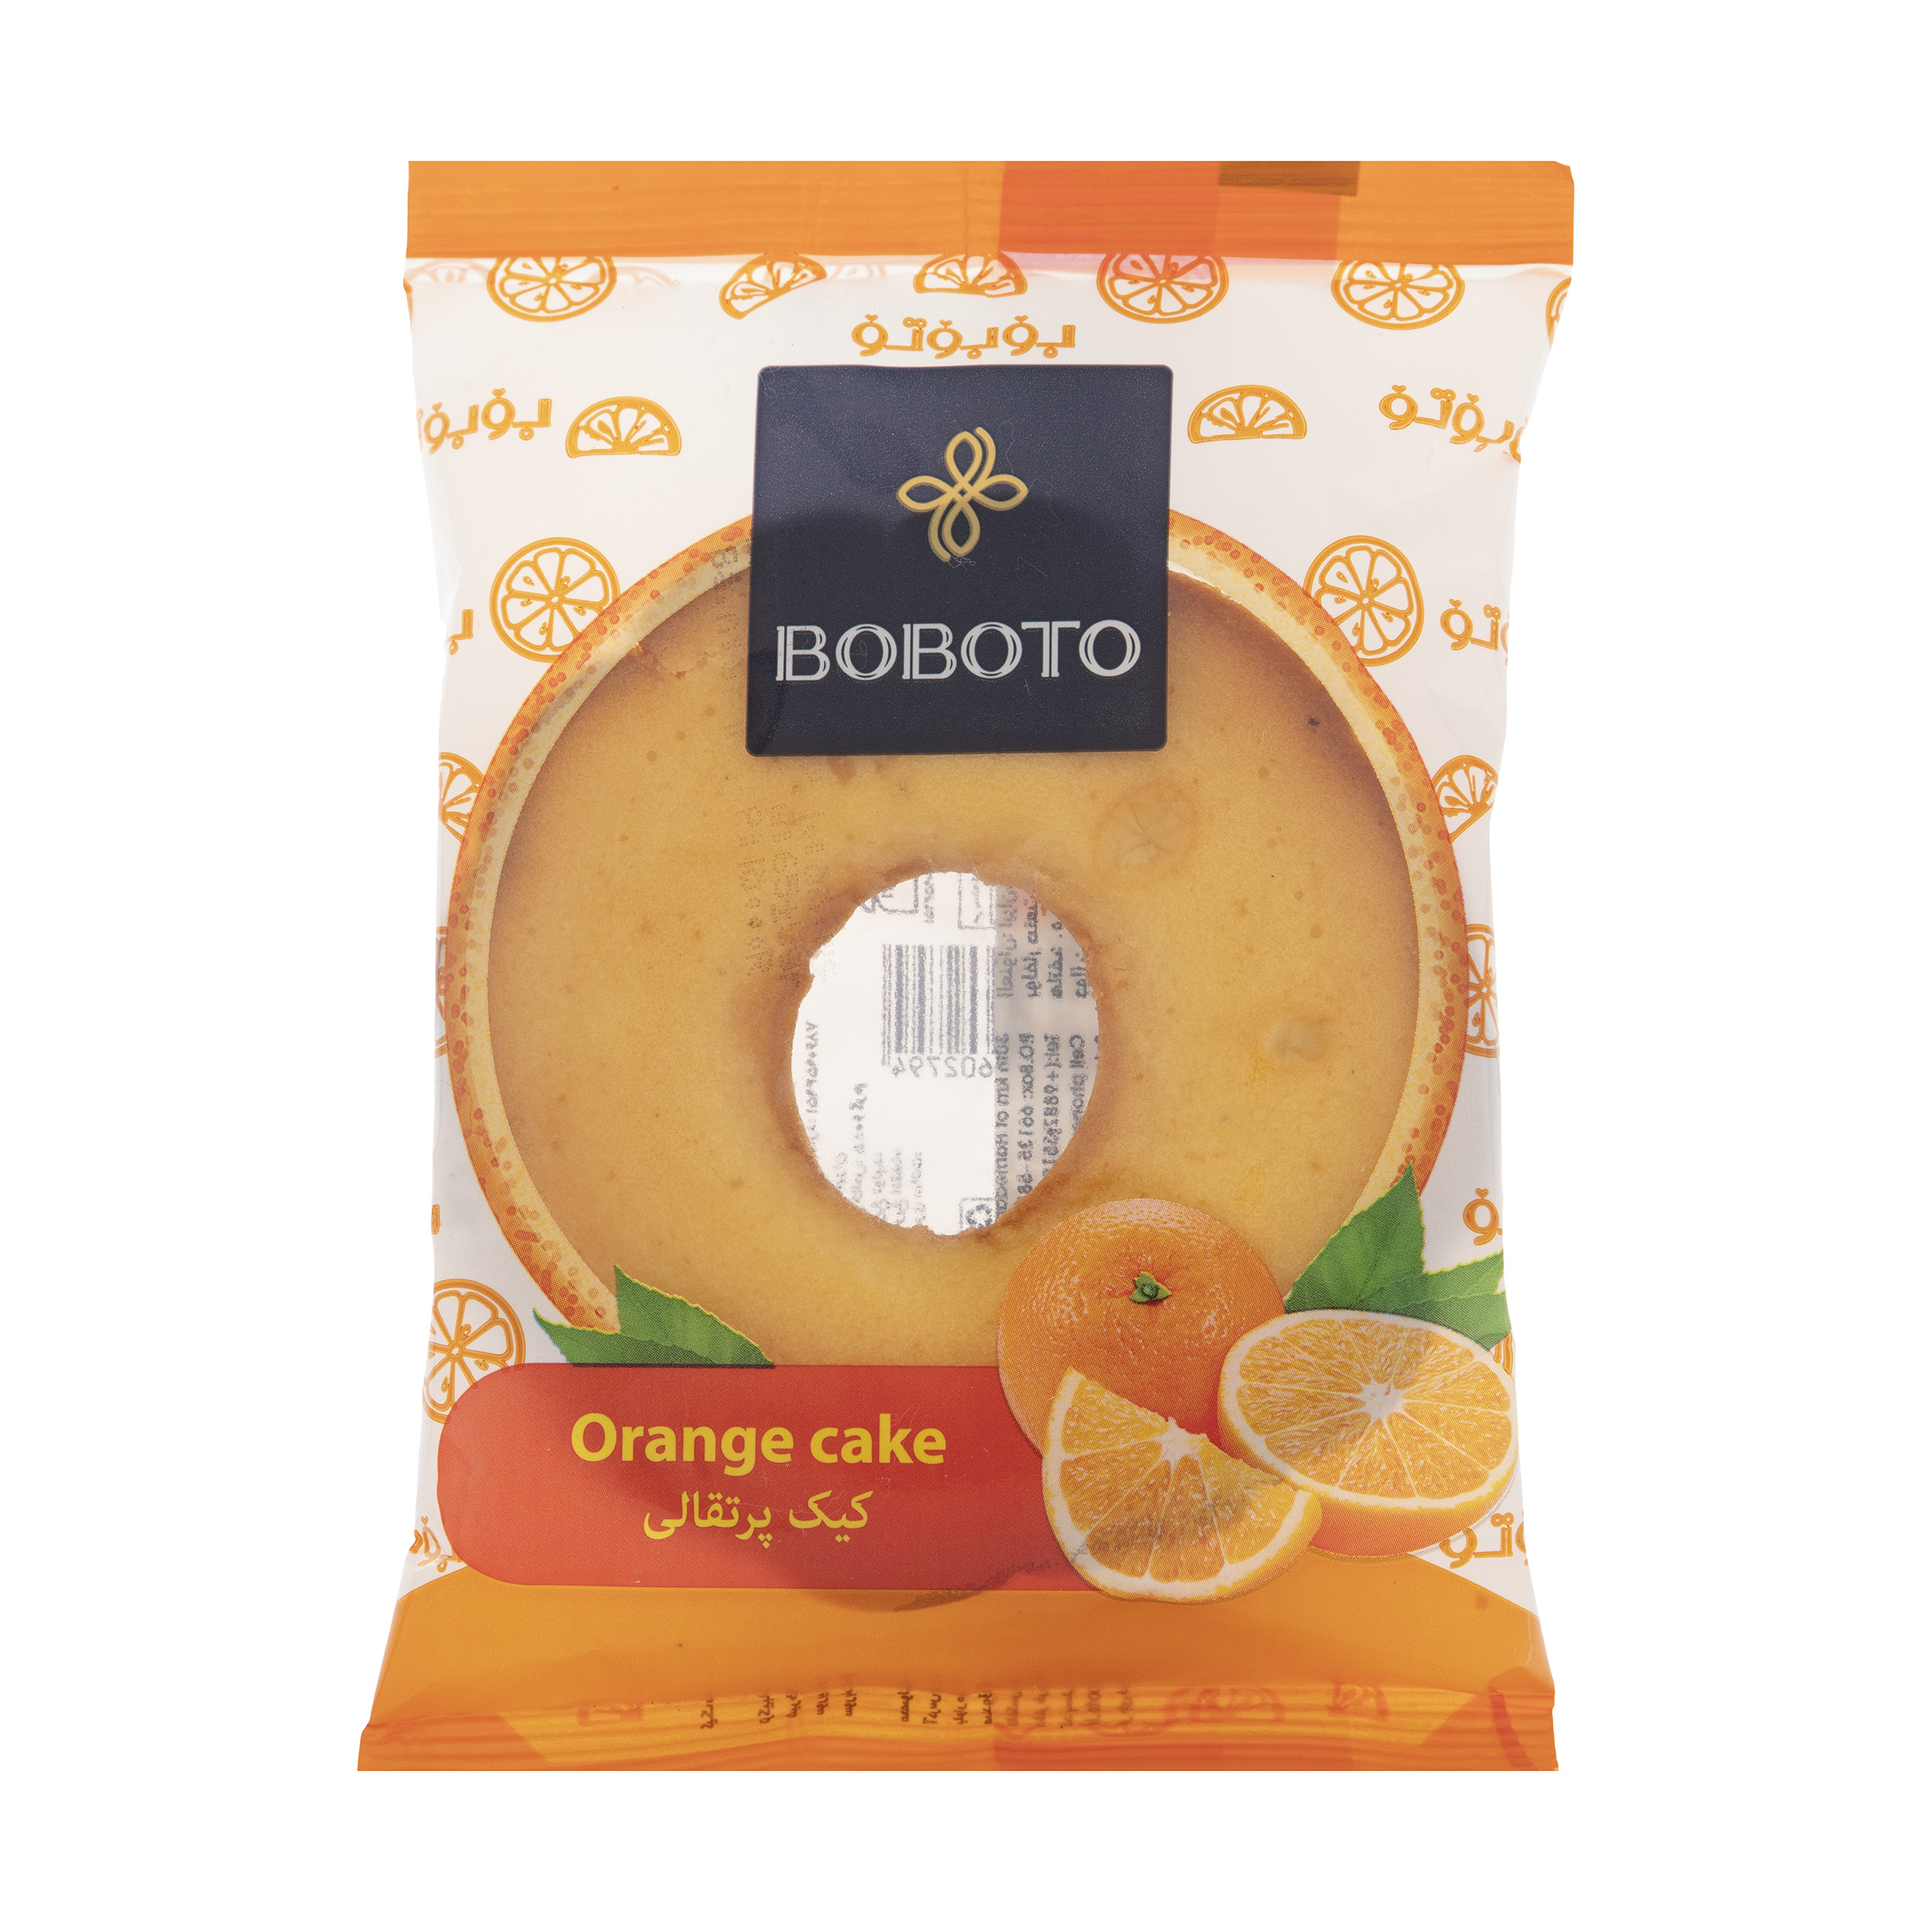 کیک پرتقالی بوبوتو مقدار 60 گرم